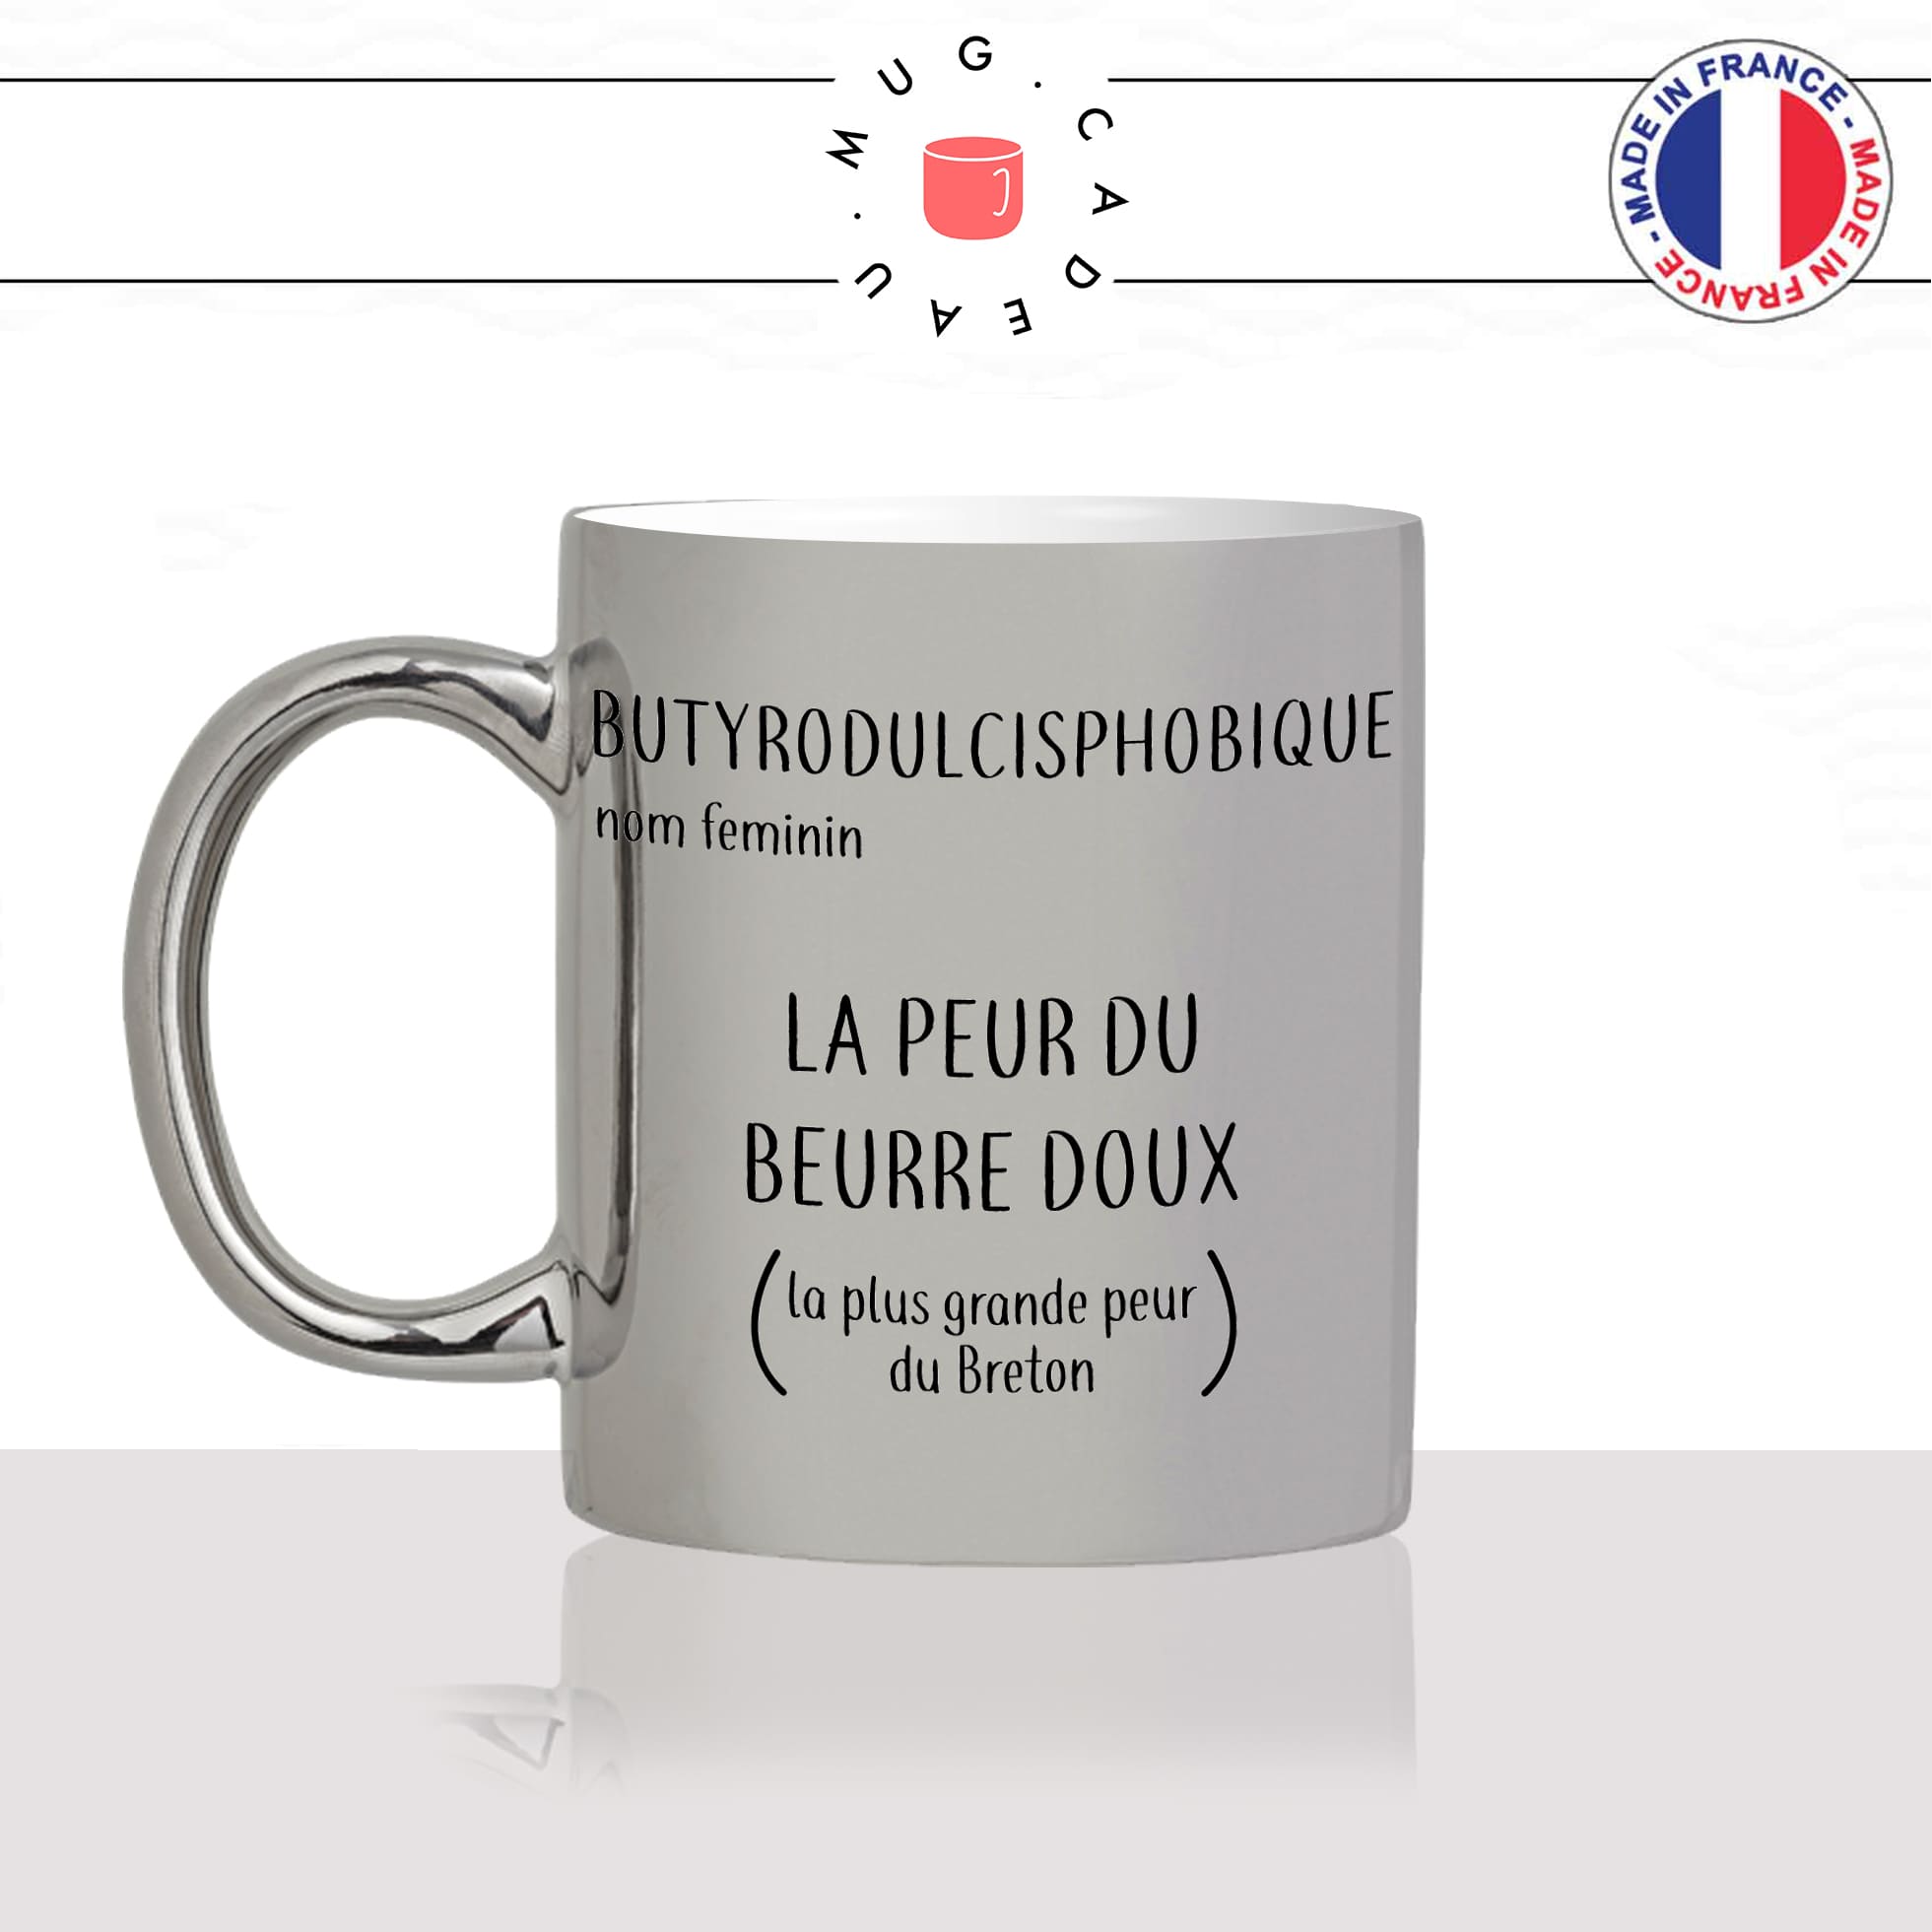 mug-tasse-argent-argenté-silver-la-peur-du-beurre-doux-salé-sel-breton-bretagne-phobie-humour-francais-idée-cadeau-fun-cool-café-thé